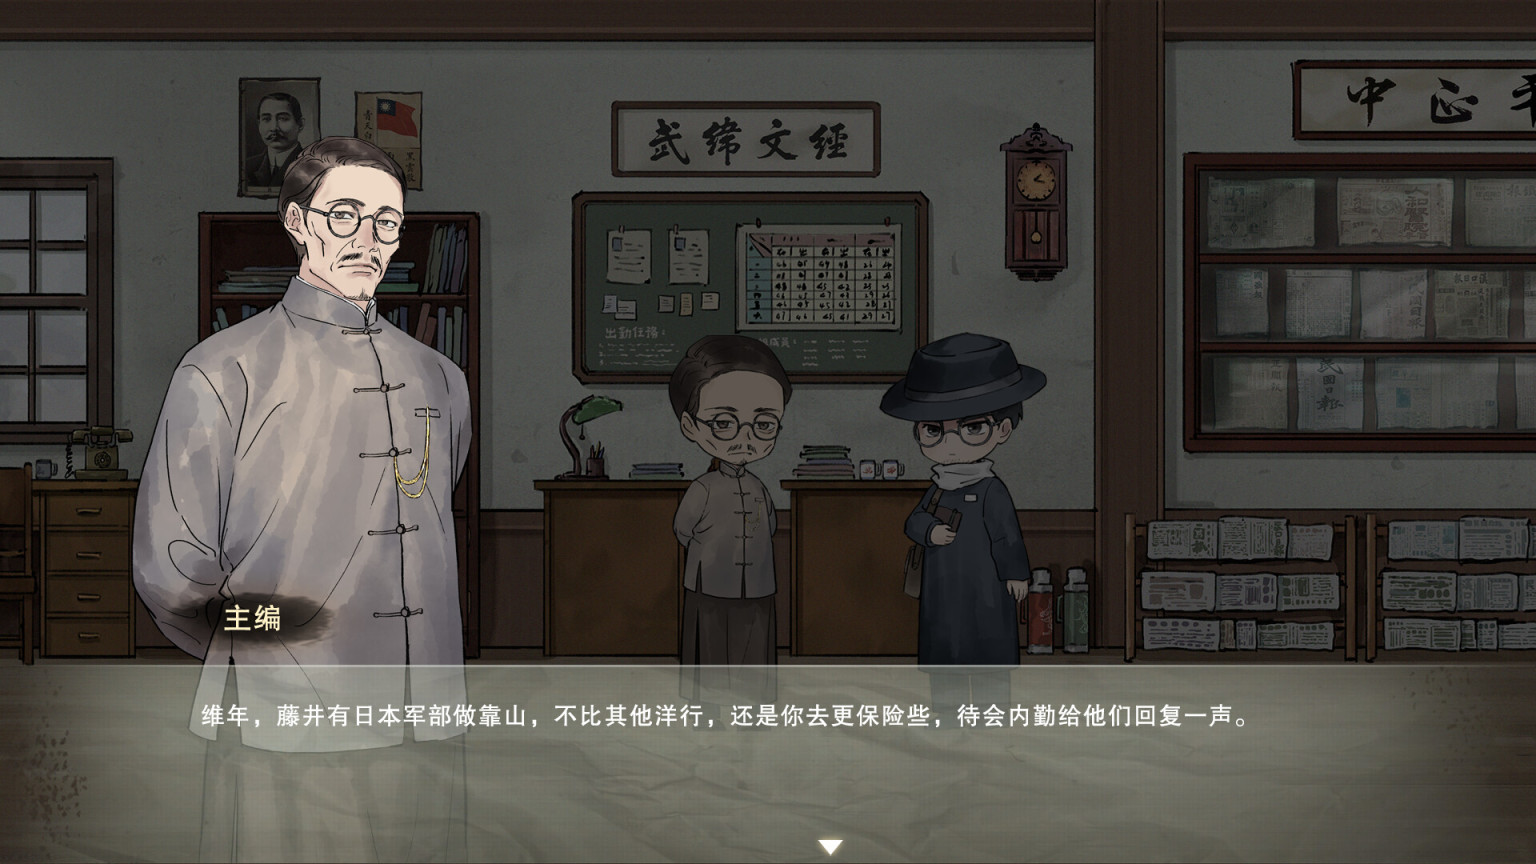 【PC游戏】知音动漫制作的原创推理互动剧情小说《江华号》将于12月7日推出-第6张